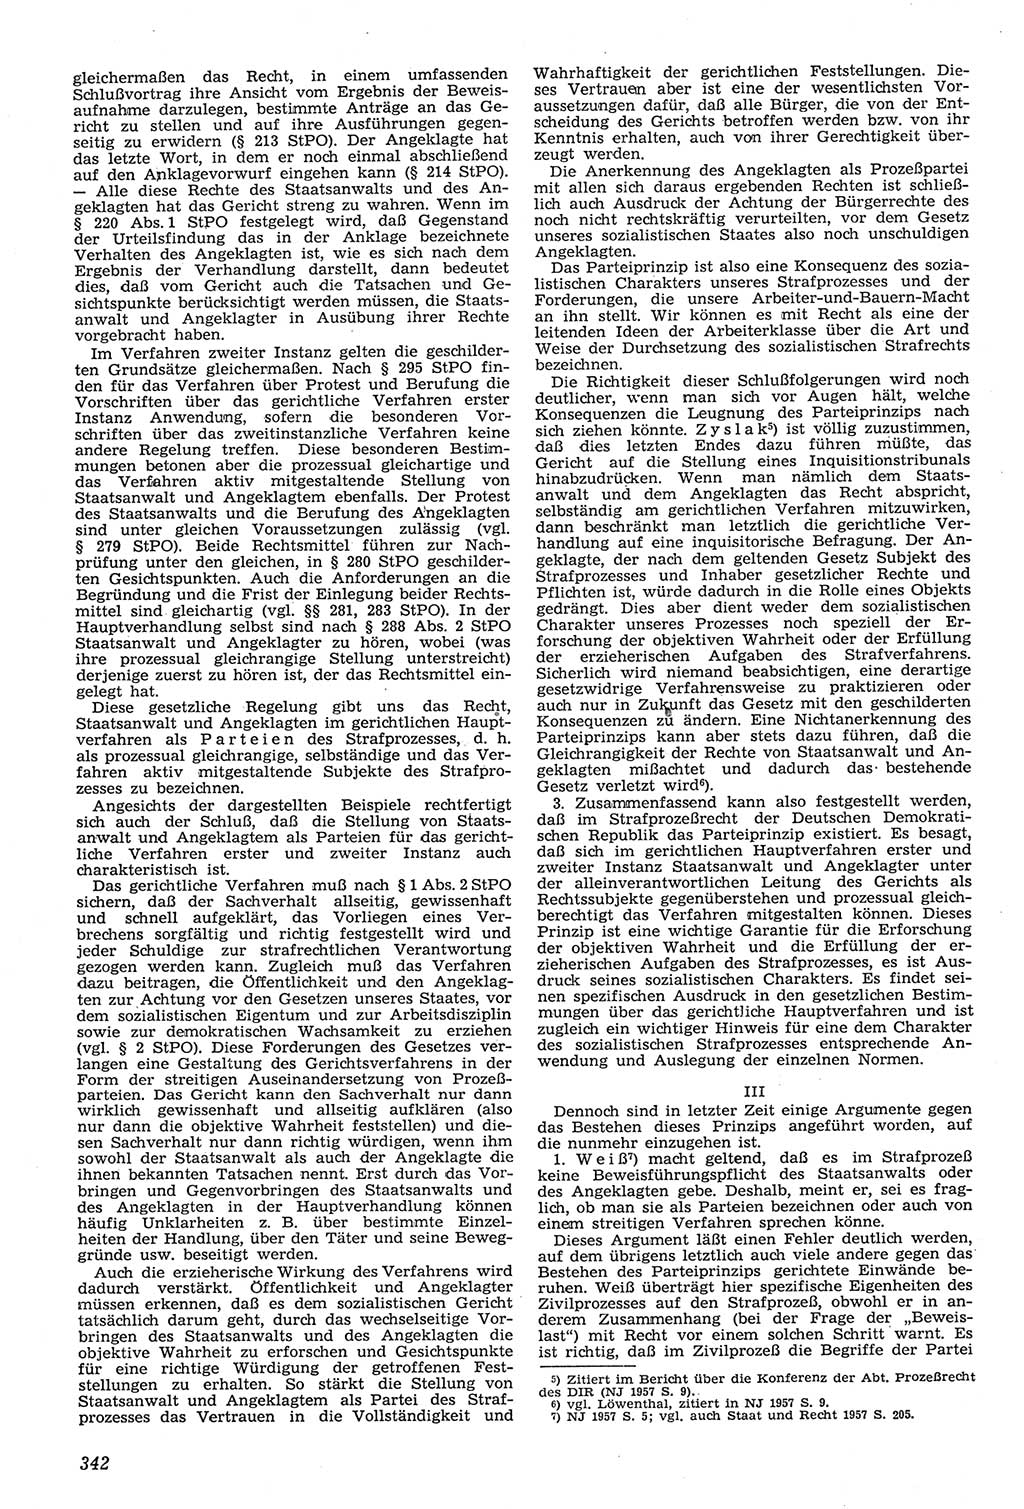 Neue Justiz (NJ), Zeitschrift für Recht und Rechtswissenschaft [Deutsche Demokratische Republik (DDR)], 11. Jahrgang 1957, Seite 342 (NJ DDR 1957, S. 342)